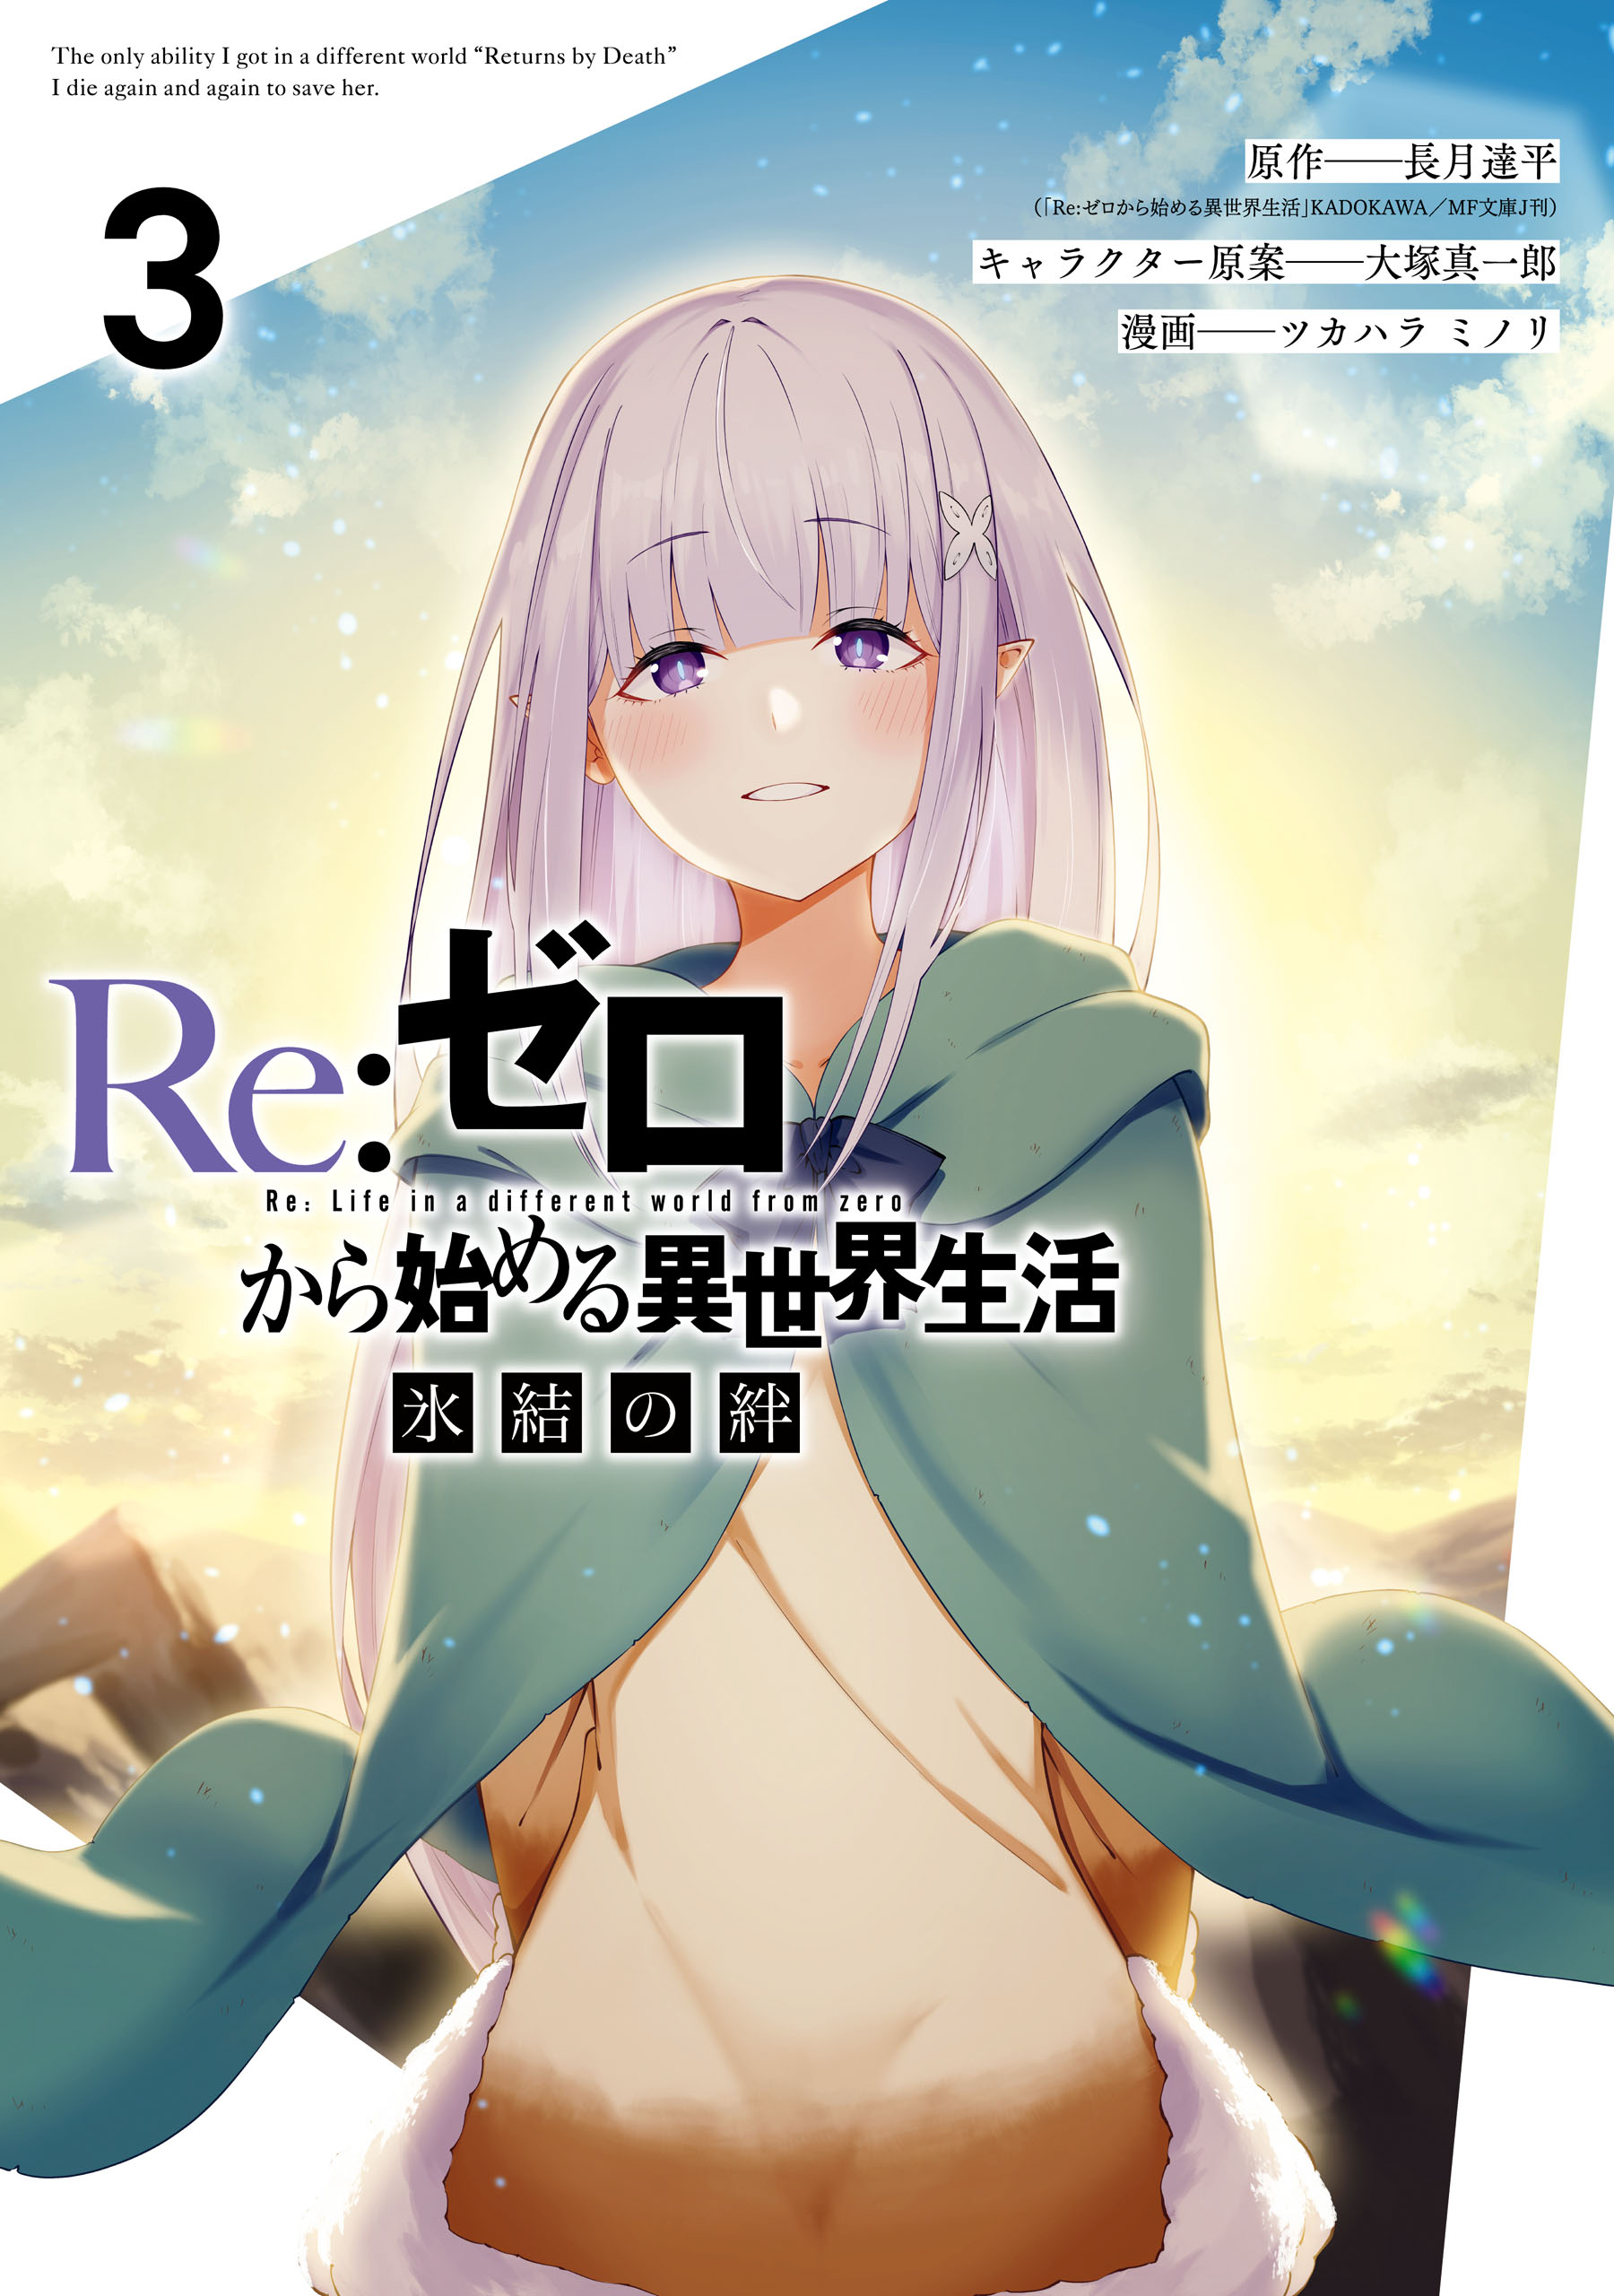 Emilia Re Zero, re Zero Kara Hajimeru Isekai Seikatsu, relife, re